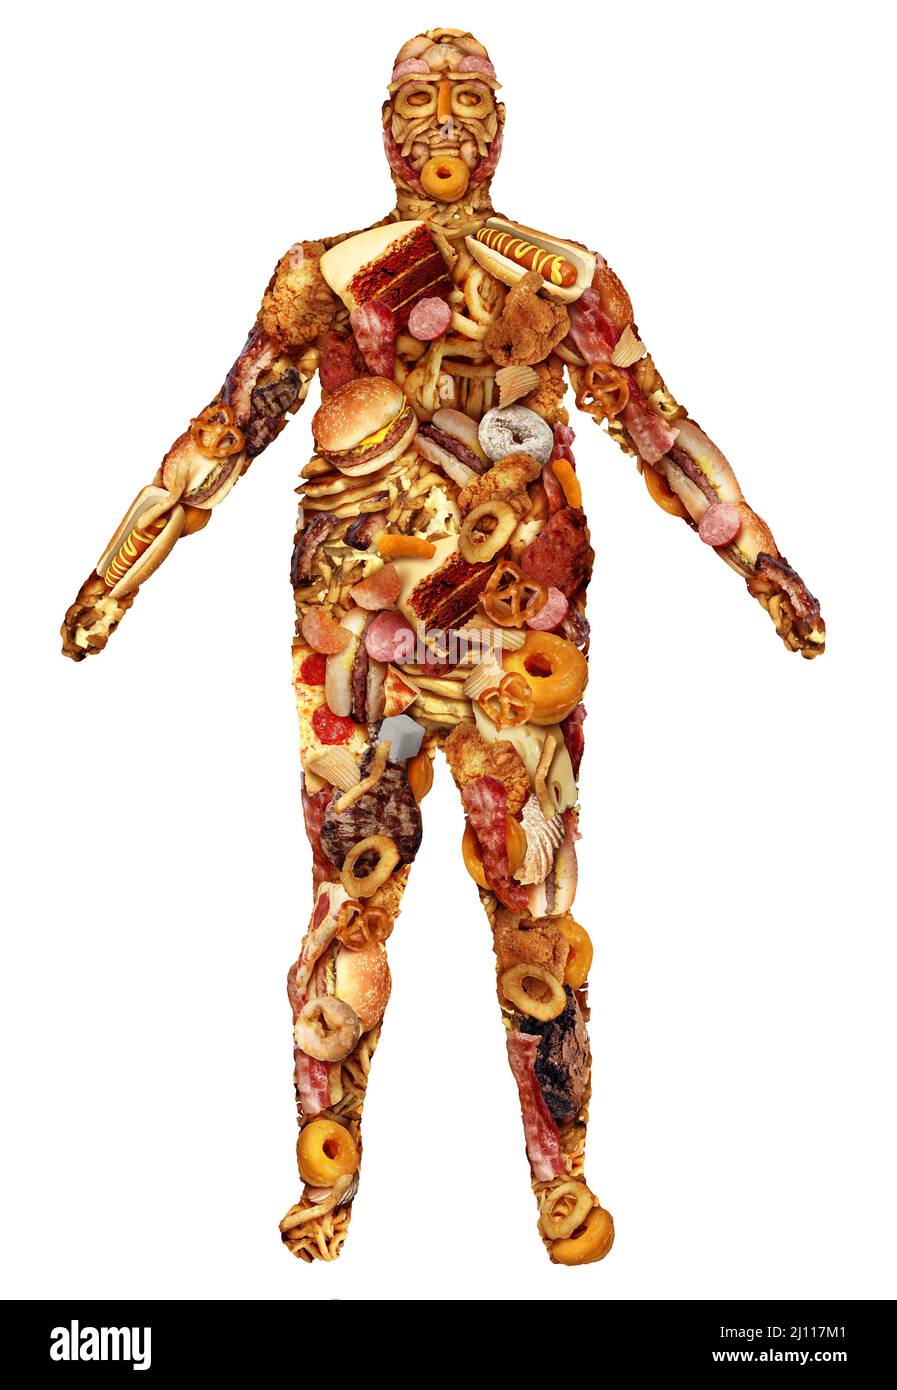 Menschlicher Körper aus Junk-Food als Ernährung und Ernährung Gesundheit Problem Konzept als übergewichtige Person oder Adipositas und Diabetes-Symbol als eine große Gruppe. Stockfoto